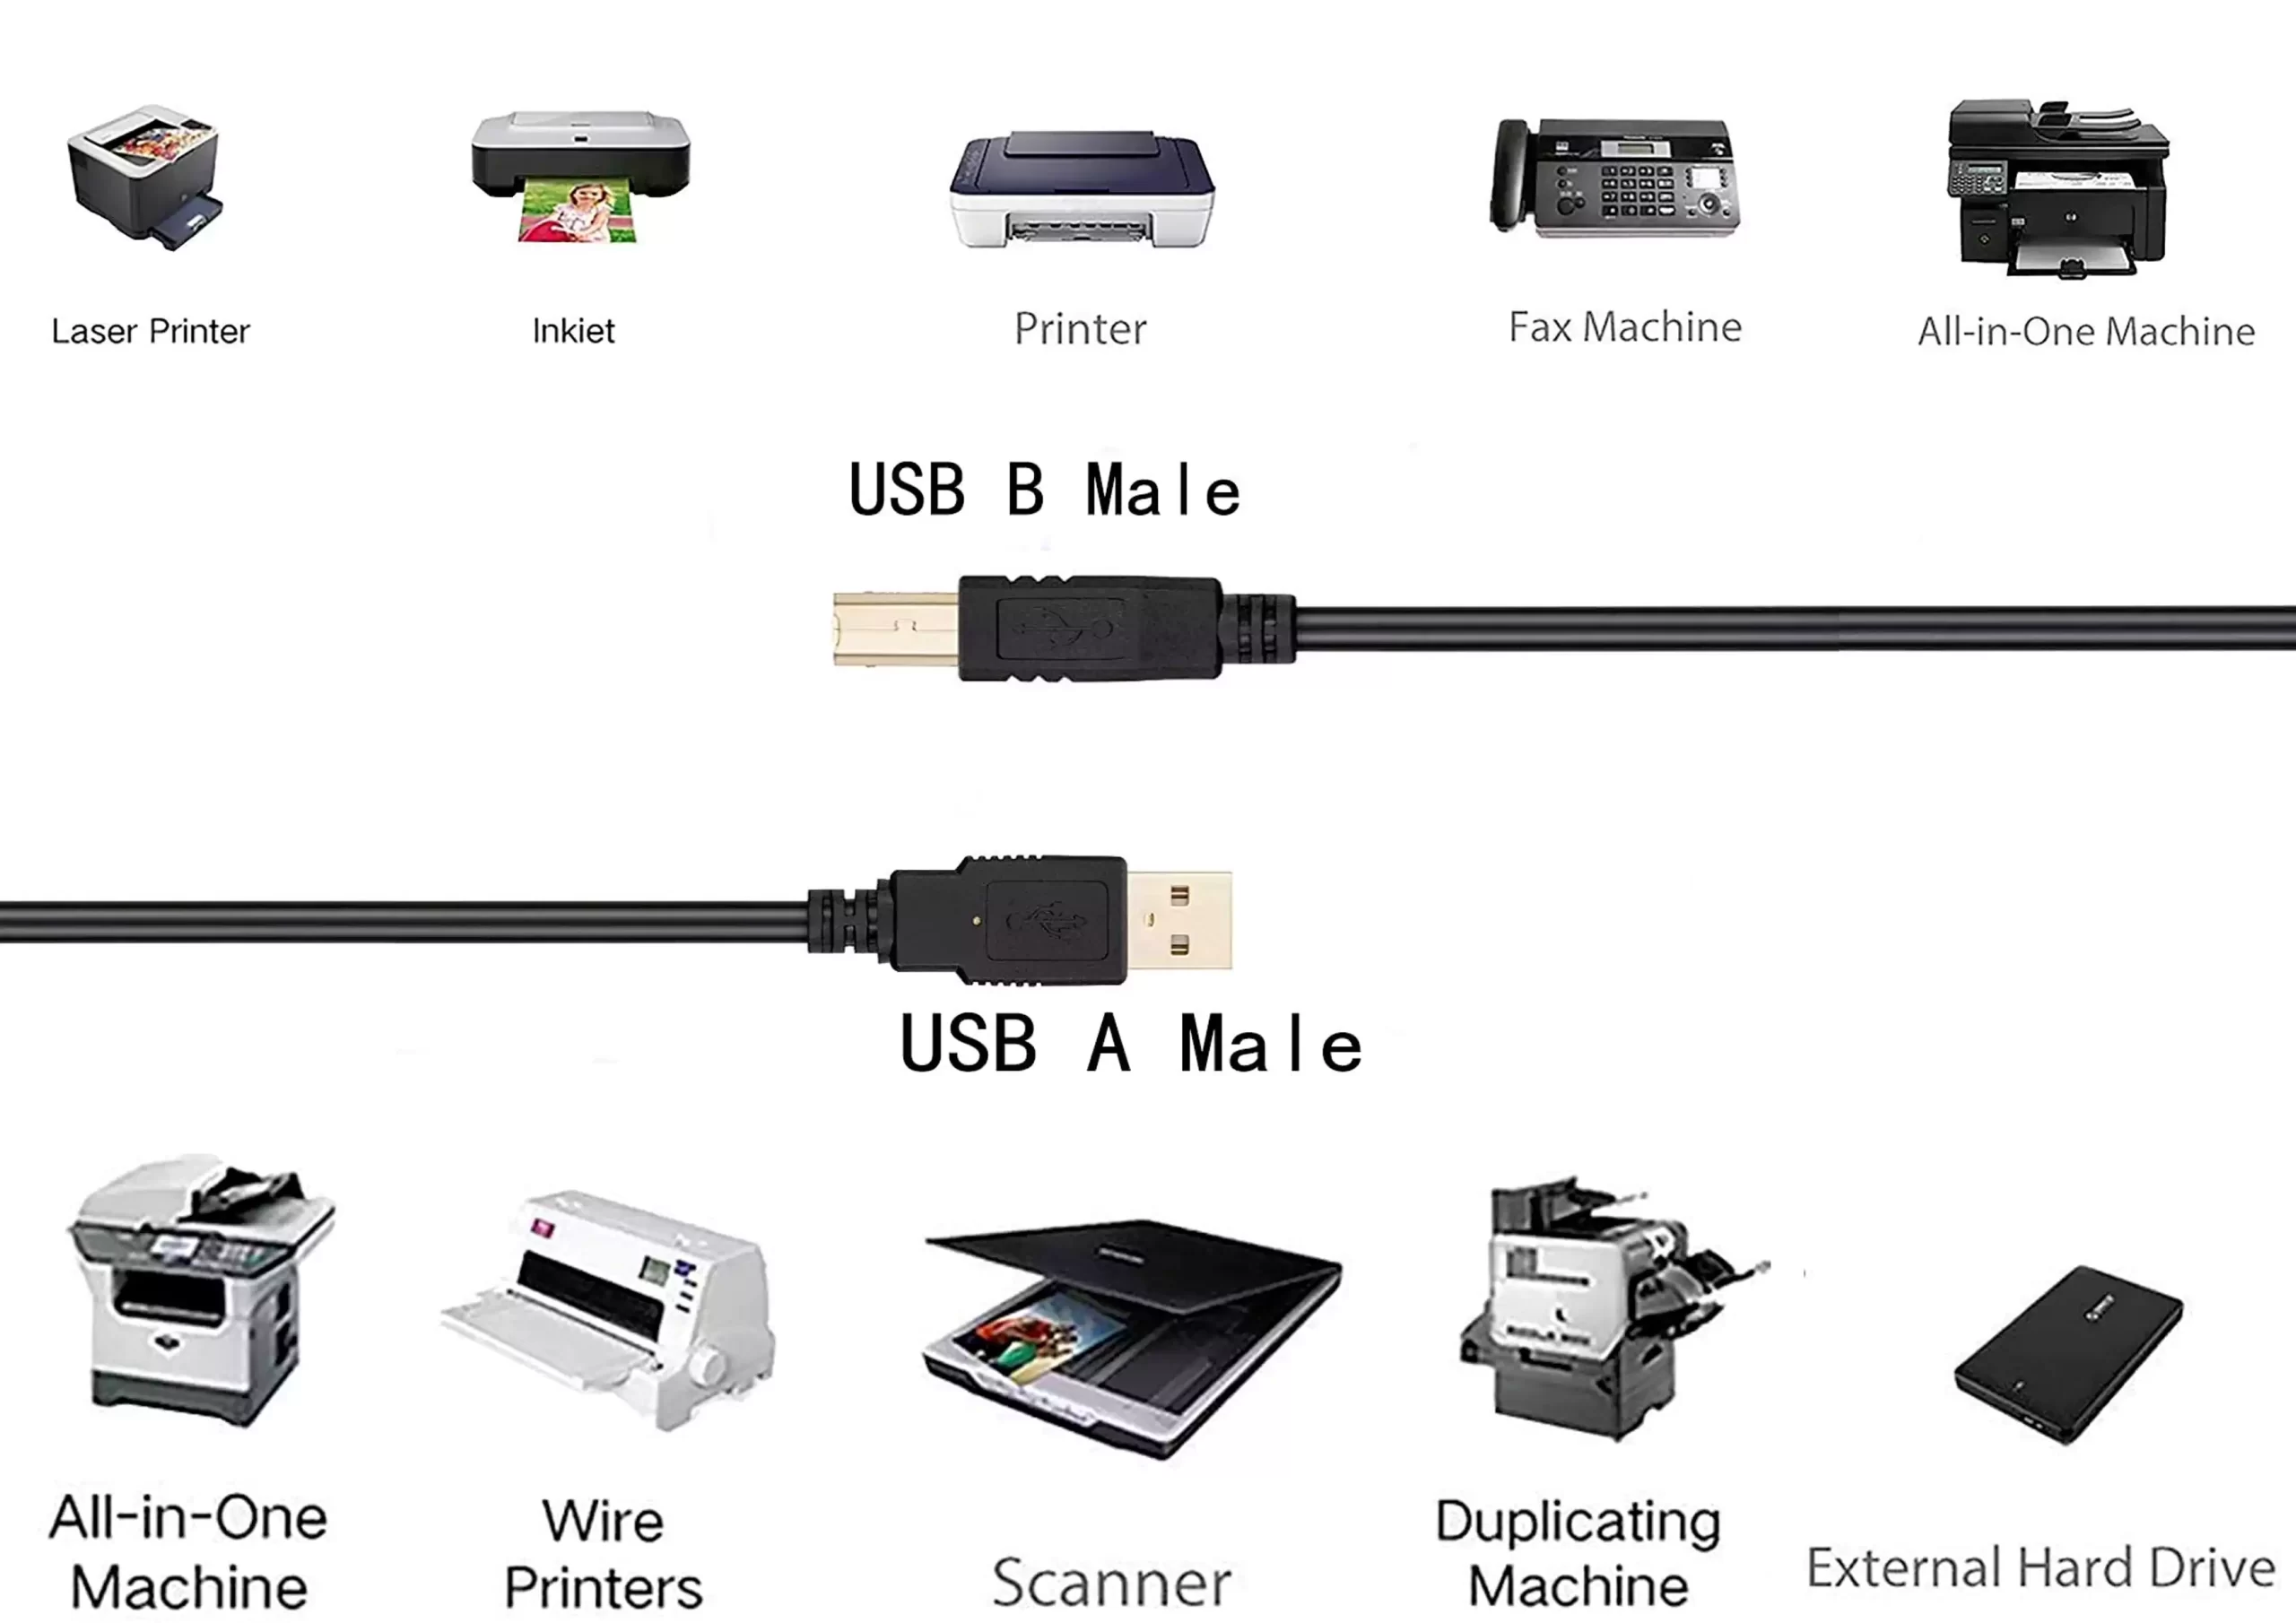 مشاهده و خرید آنلاین کابل پرینتر USB در متراژهای مختلف و کیفیت های گوناگون از فروشگاه اینترنتی فول پورت